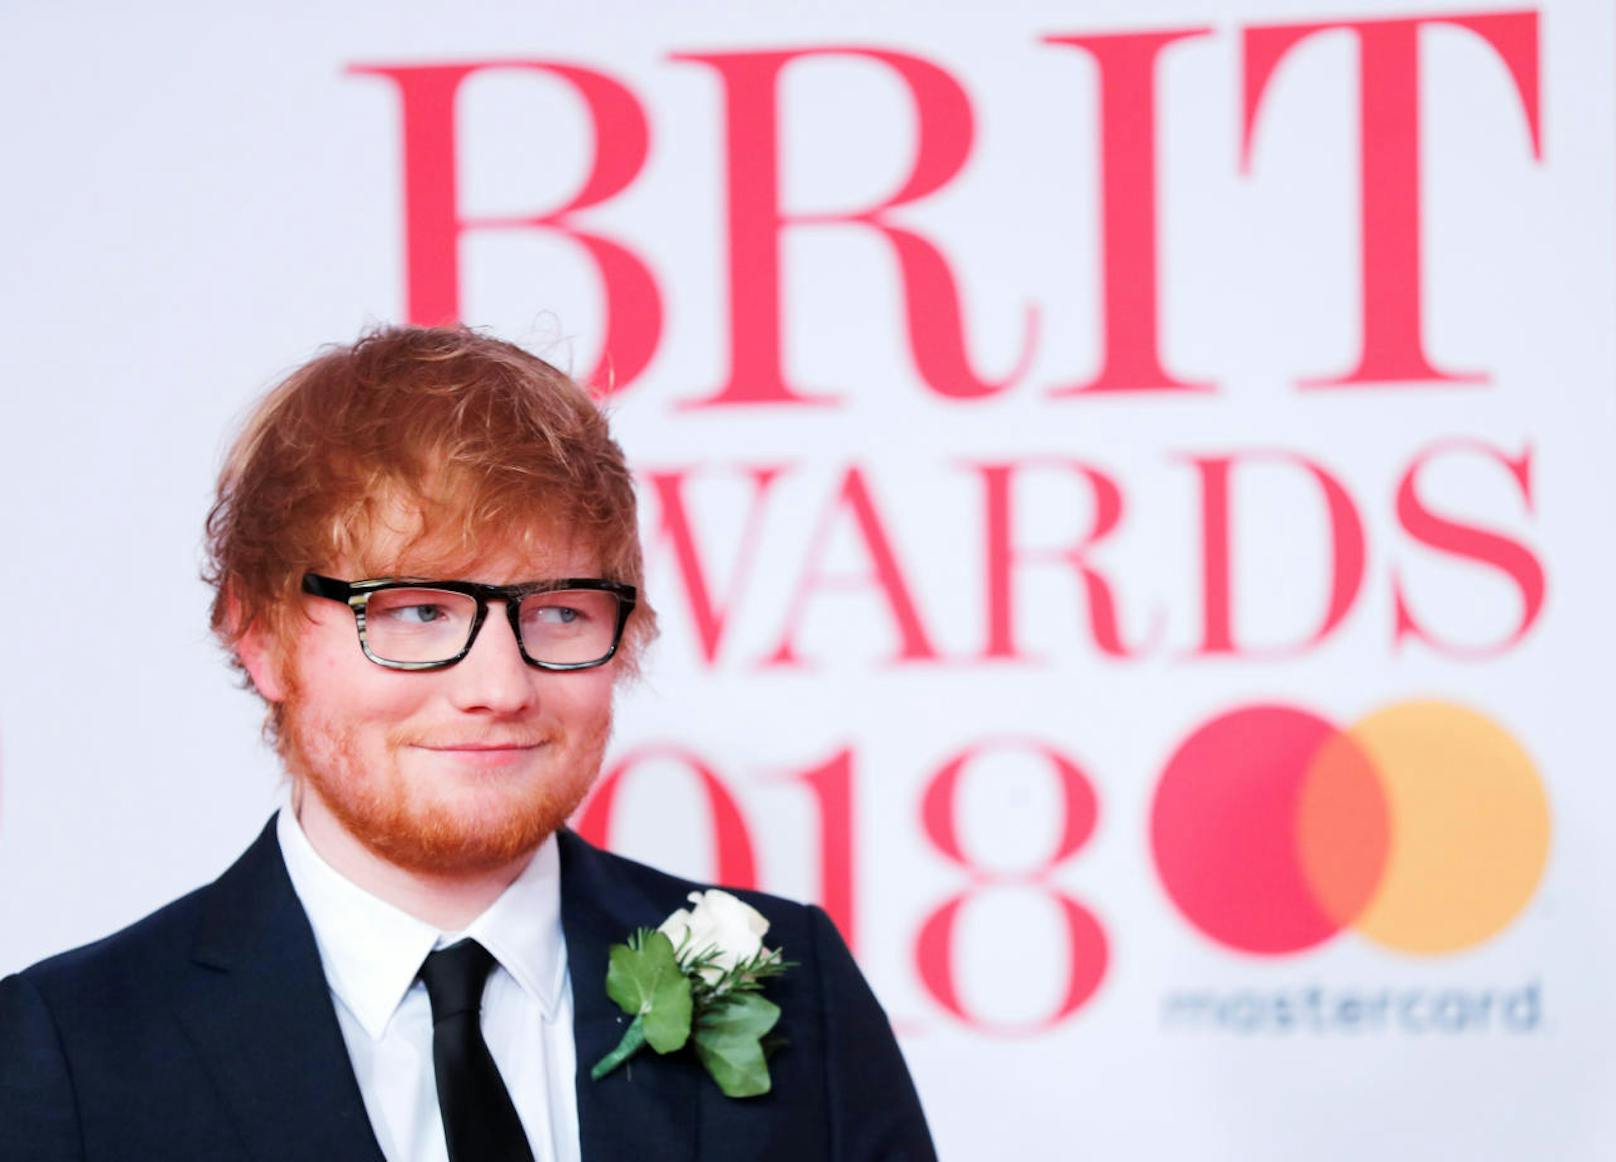 Große Ehre! Ed Sheeran verschenkt gerne Marmor-Penisse